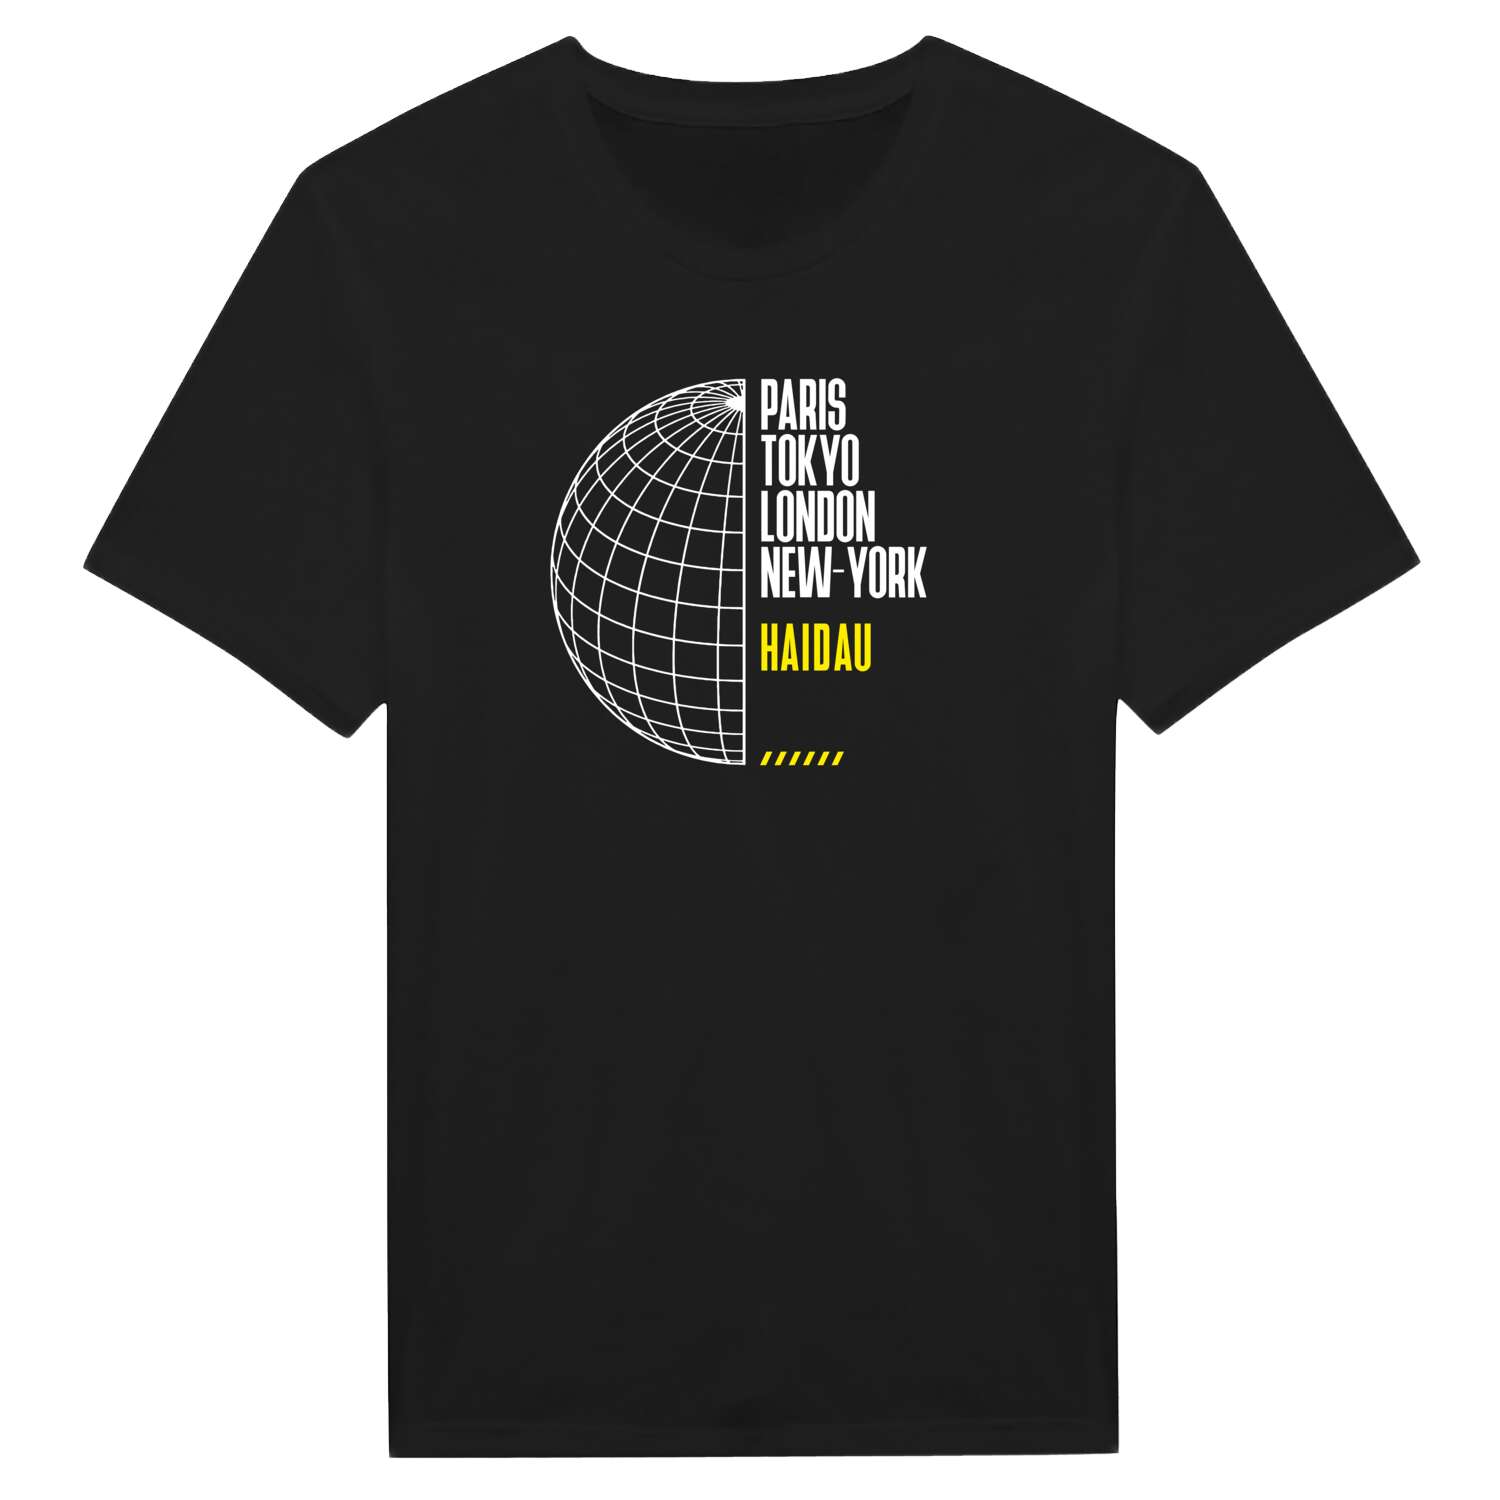 Haidau T-Shirt »Paris Tokyo London«